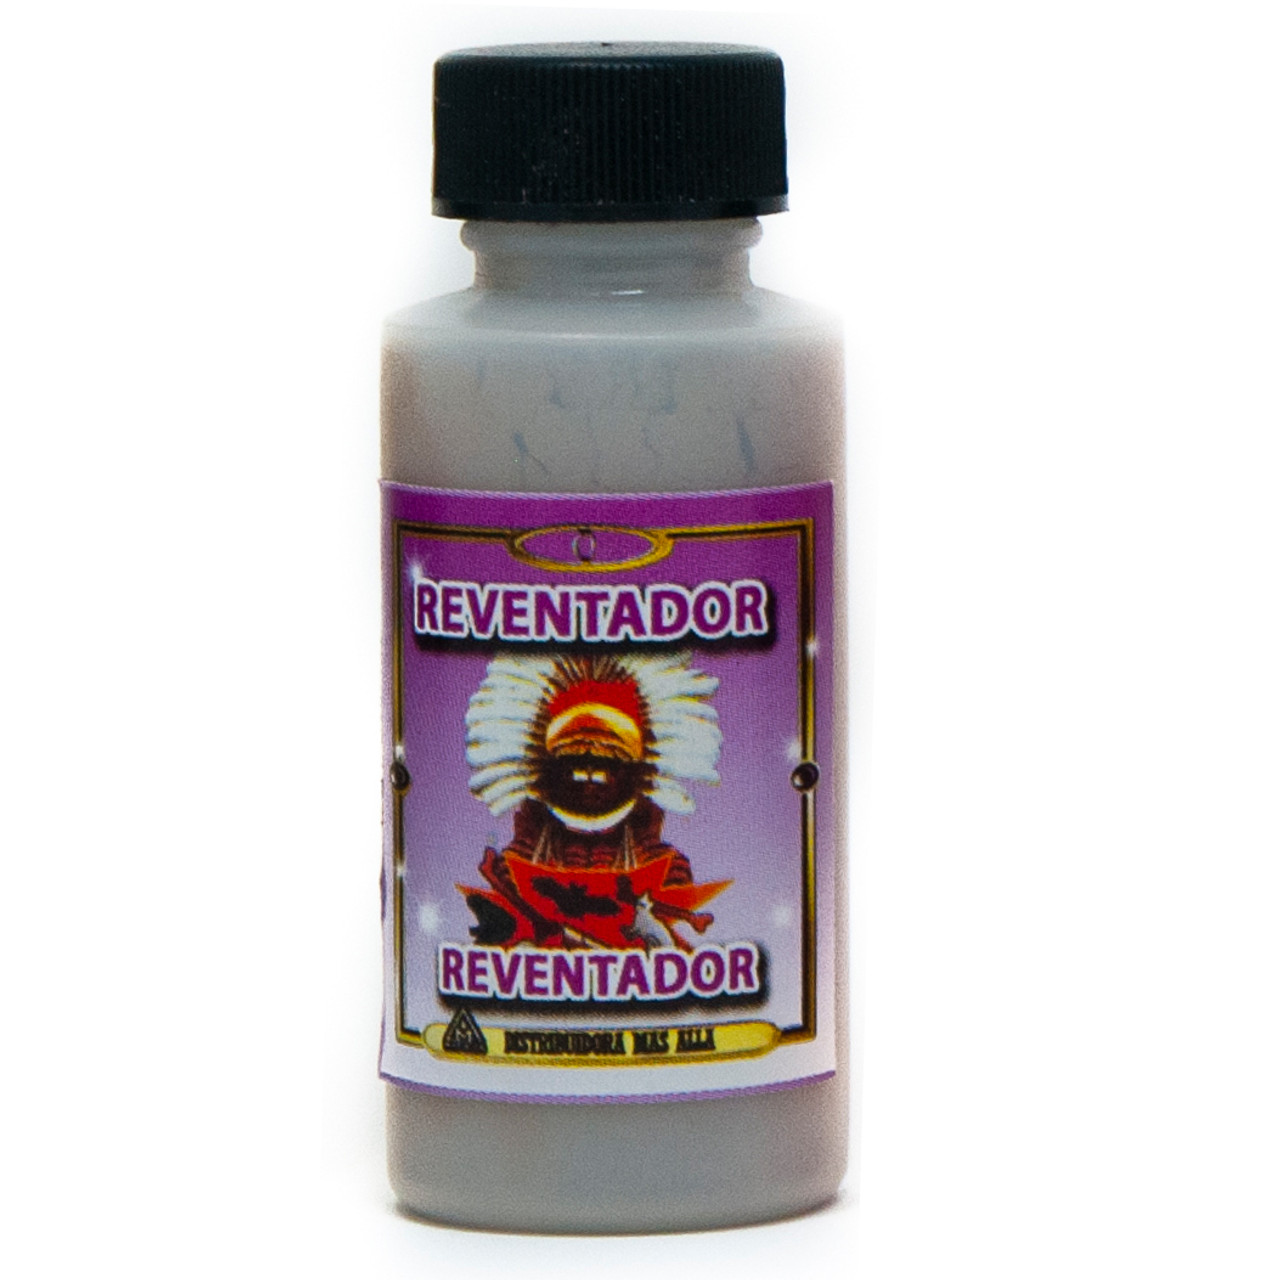 Polvo Reventador - Mystical Spiritual Powder For Spell